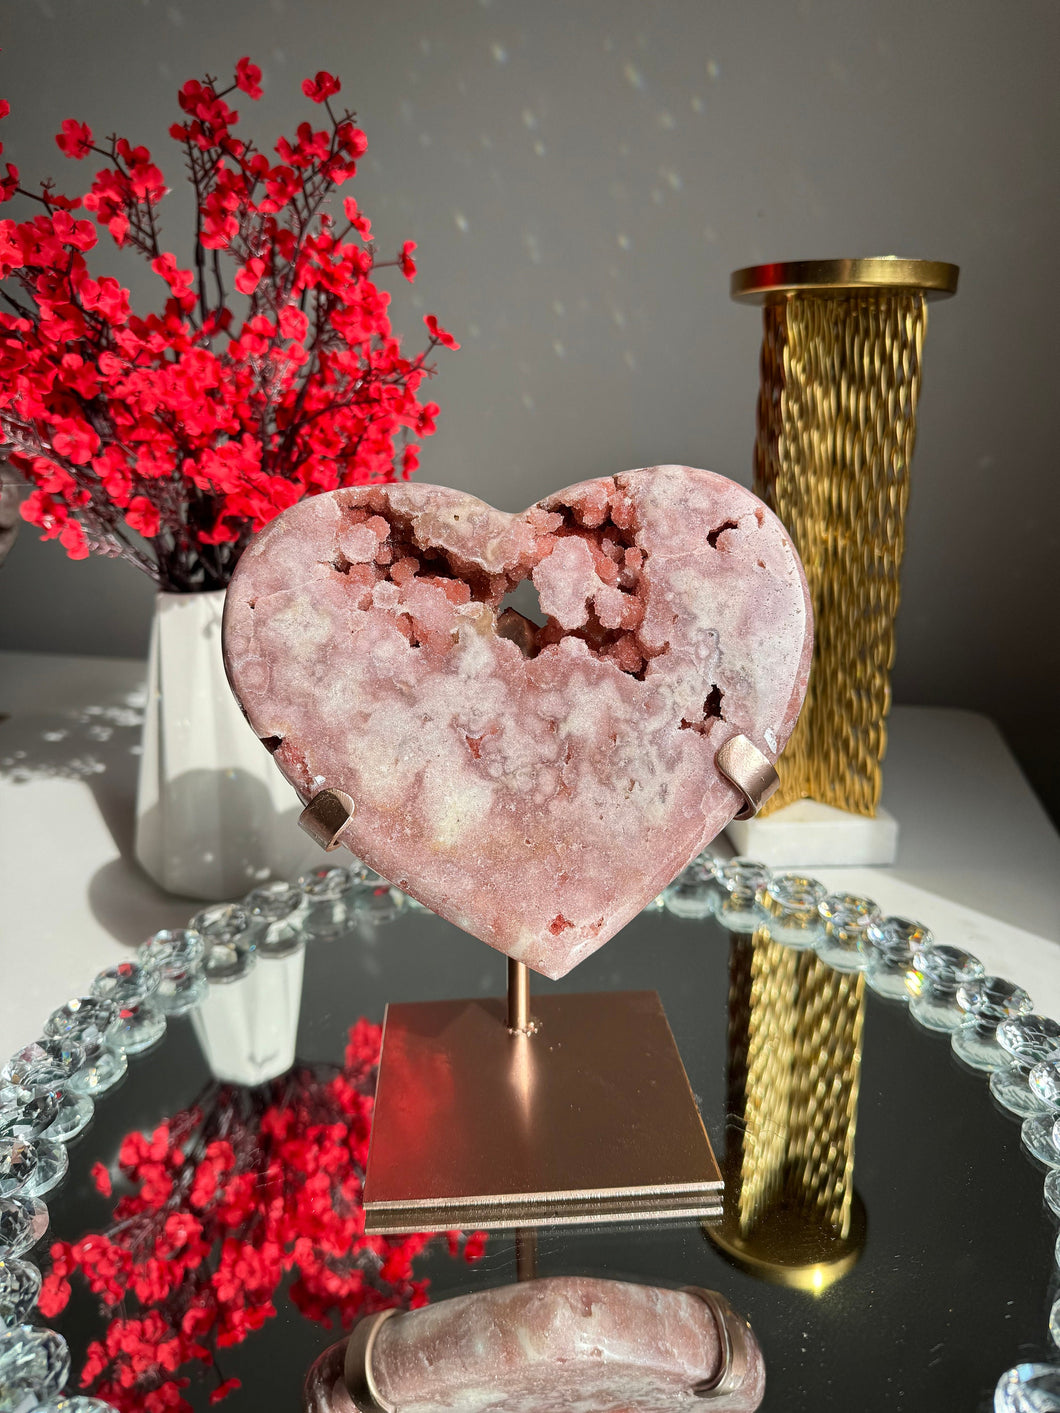 Druzy Pink amethyst heart with amethyst    2544